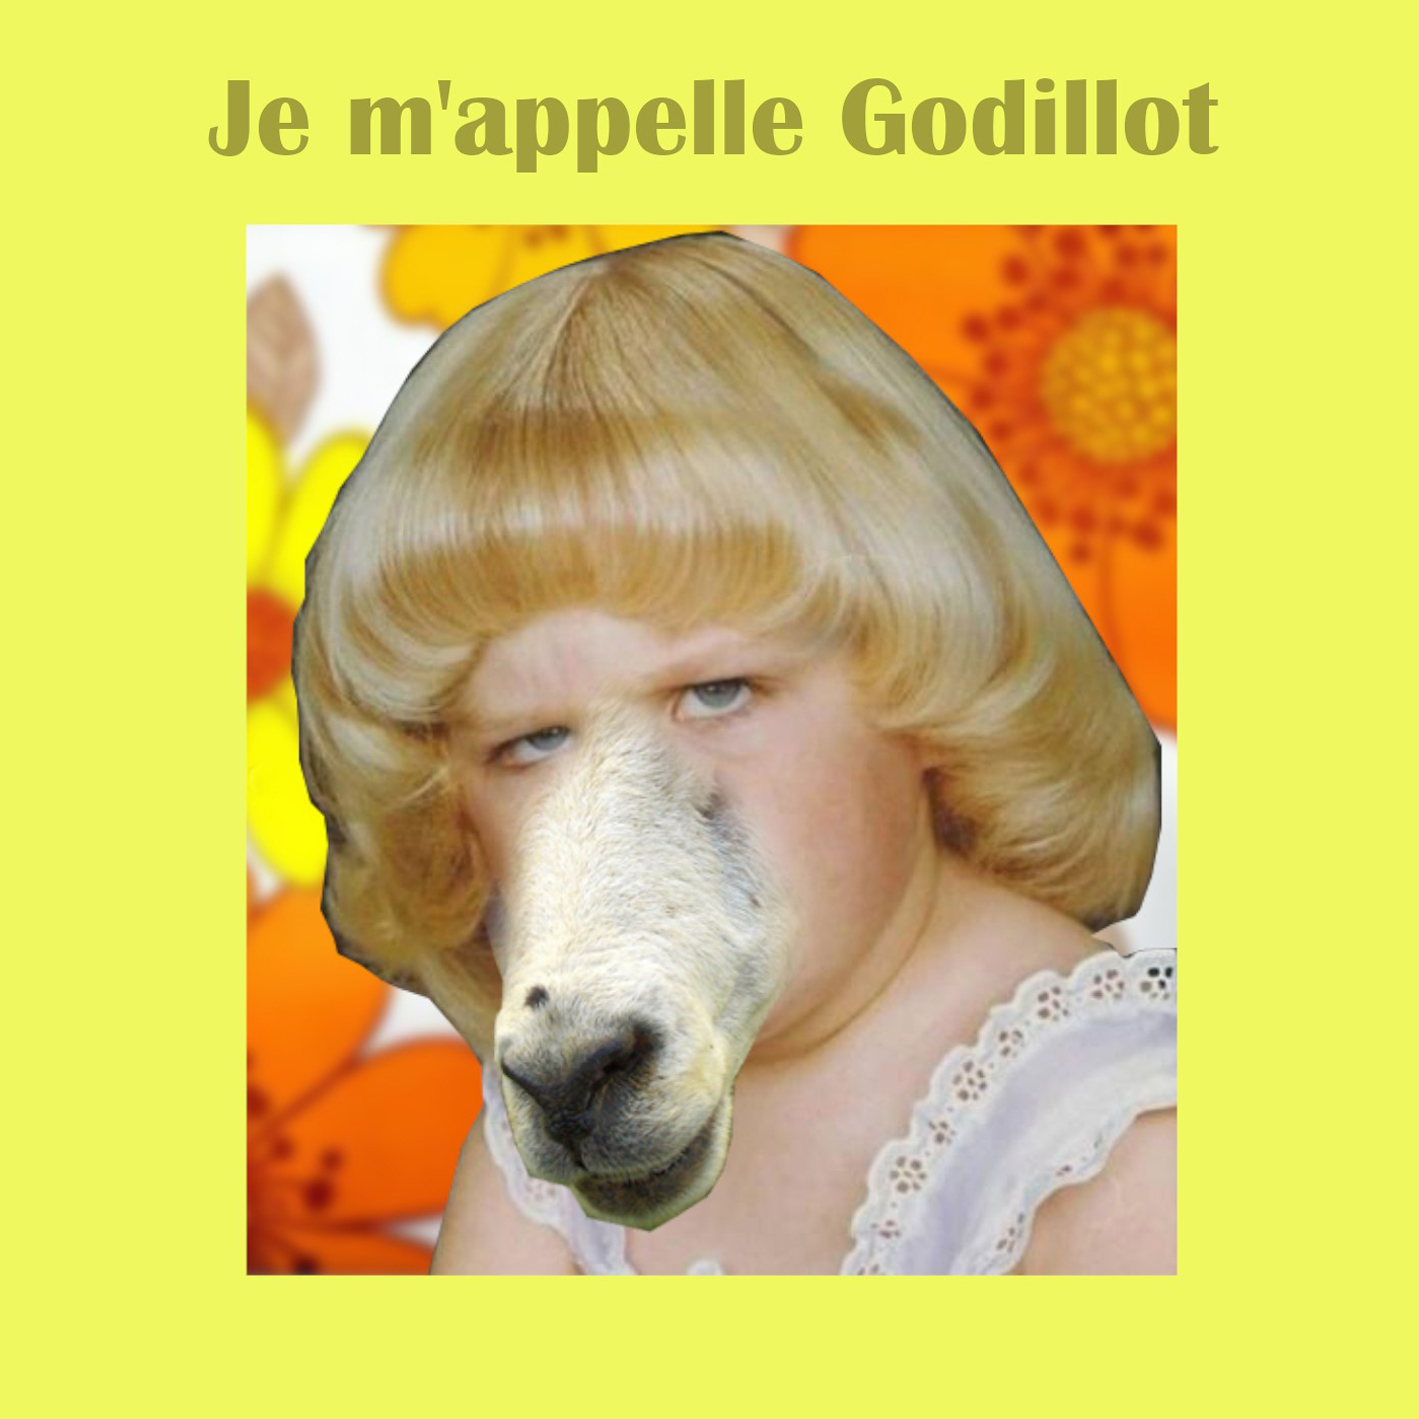 Godillot - Je m'apelle Godillot